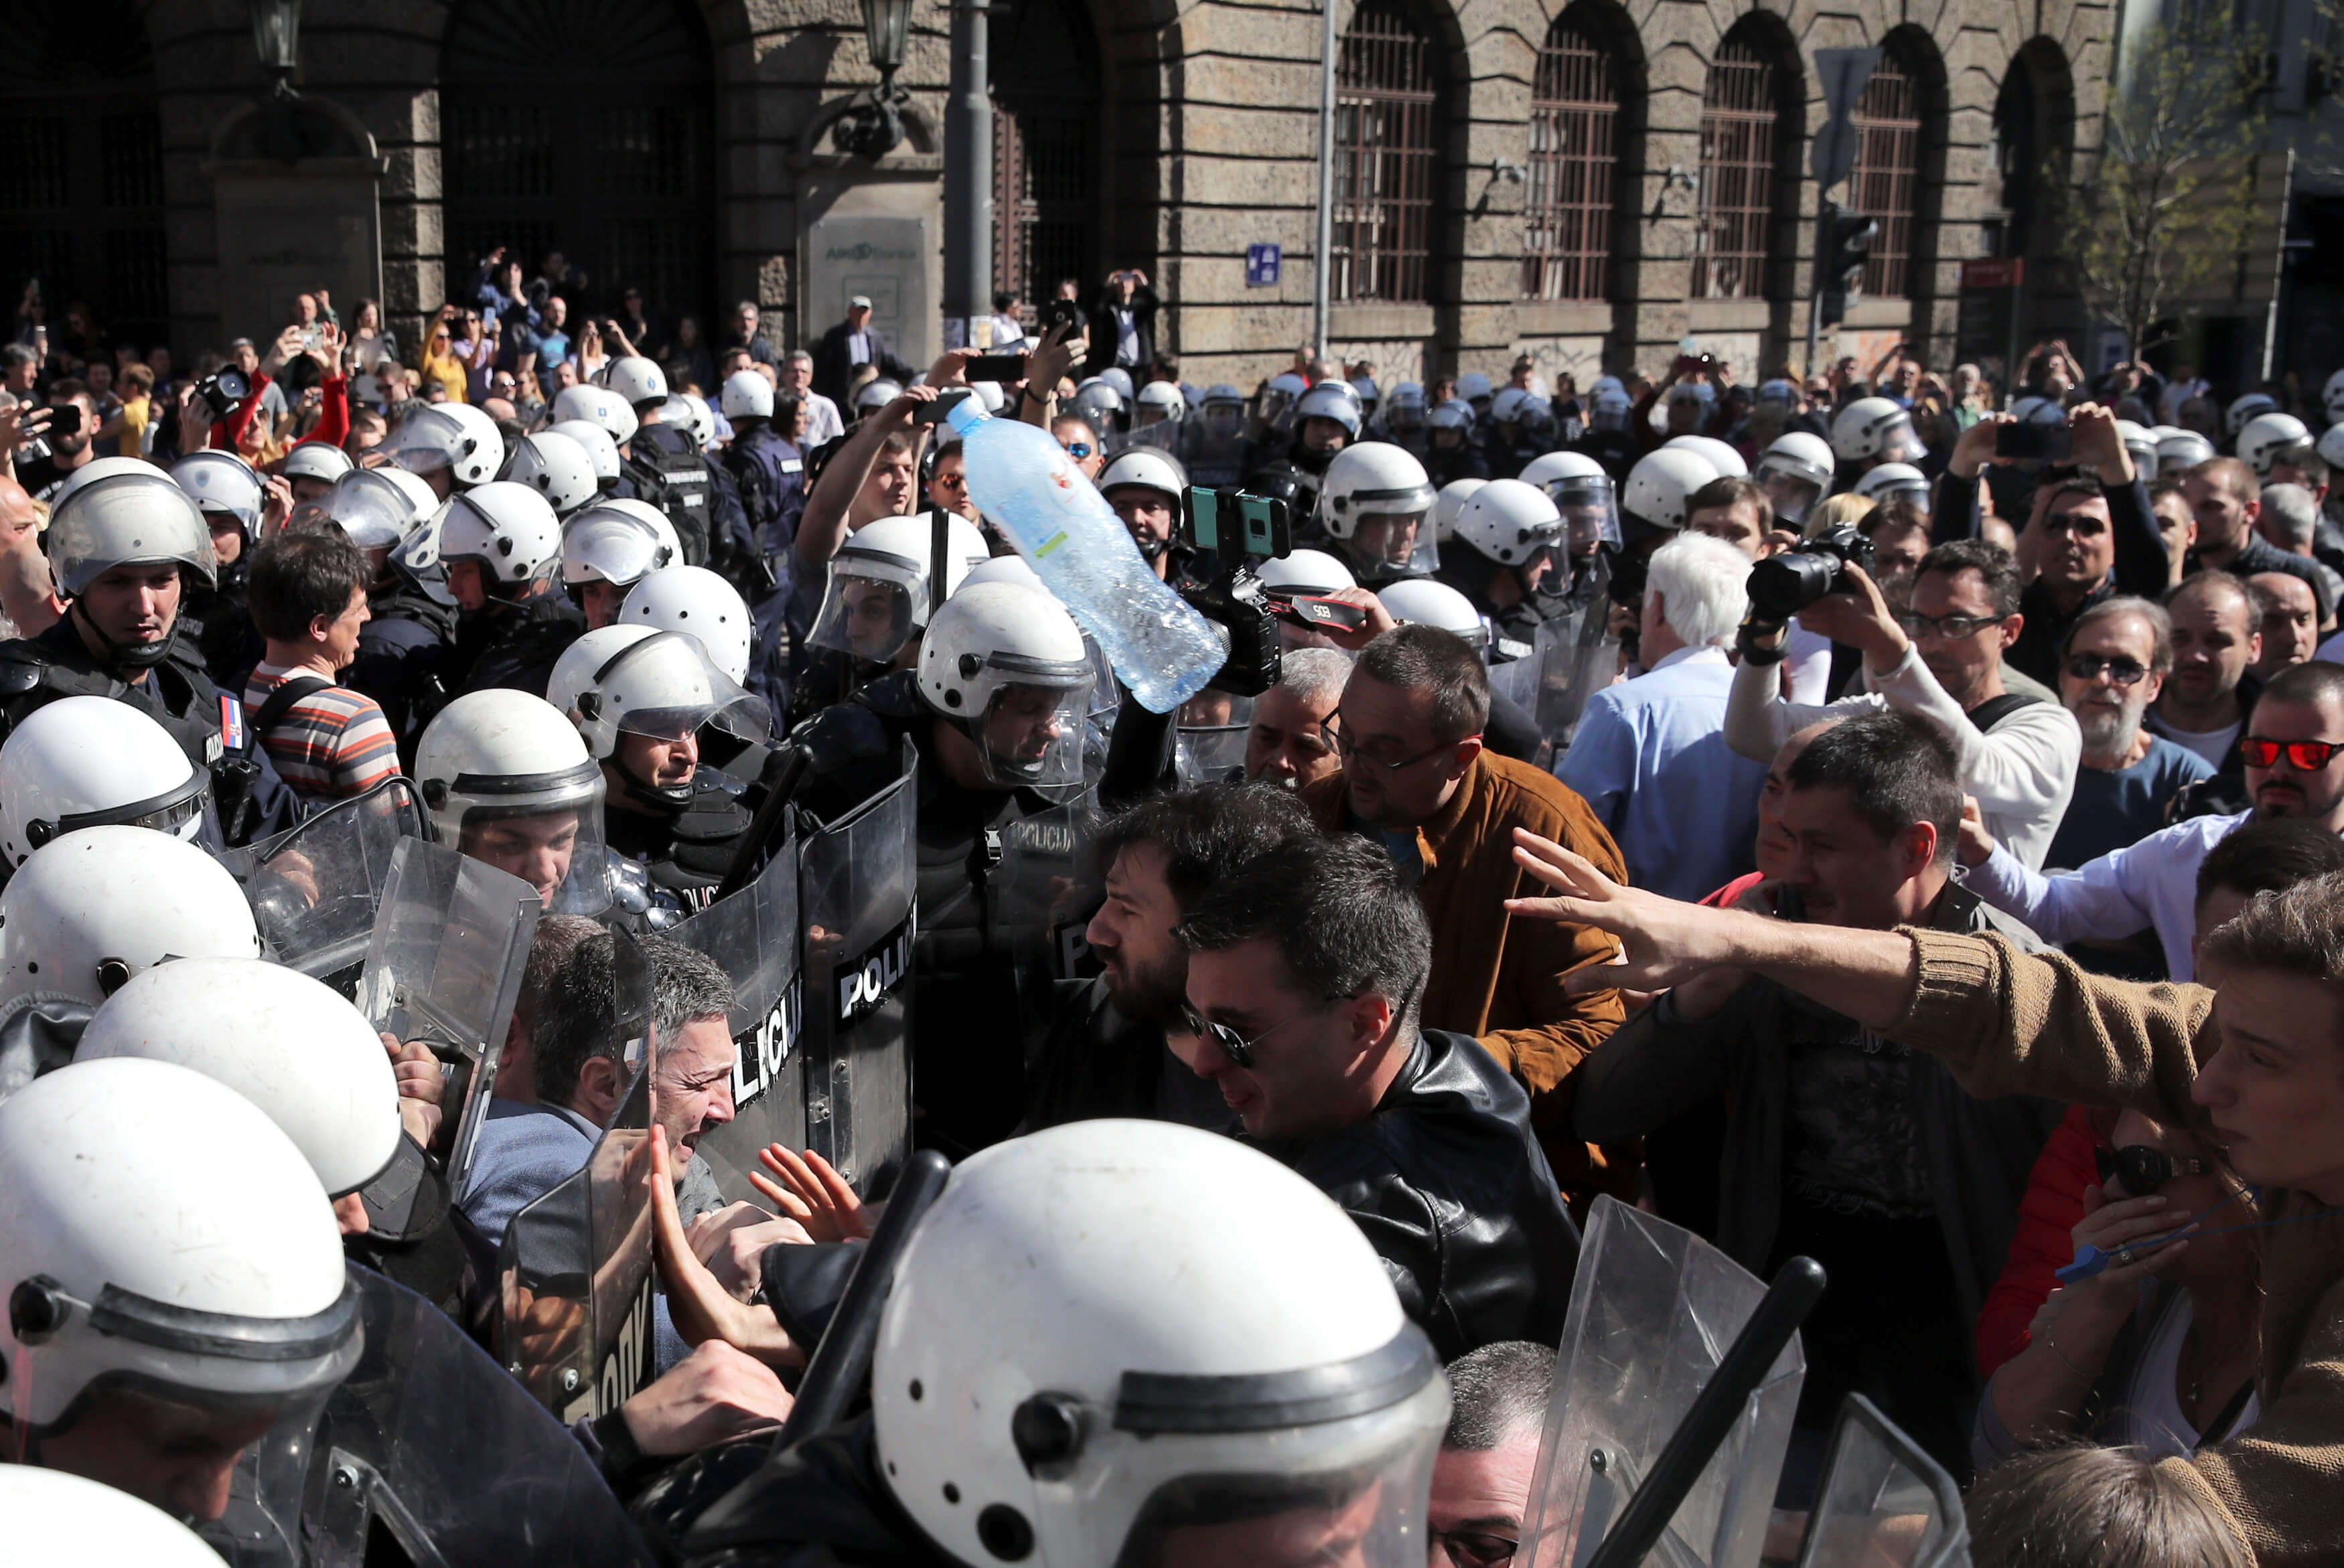 Σερβία: Αποκλεισμένος από διαδηλωτές στο προεδρικό Μέγαρο ο Βούτσιτς [pics]